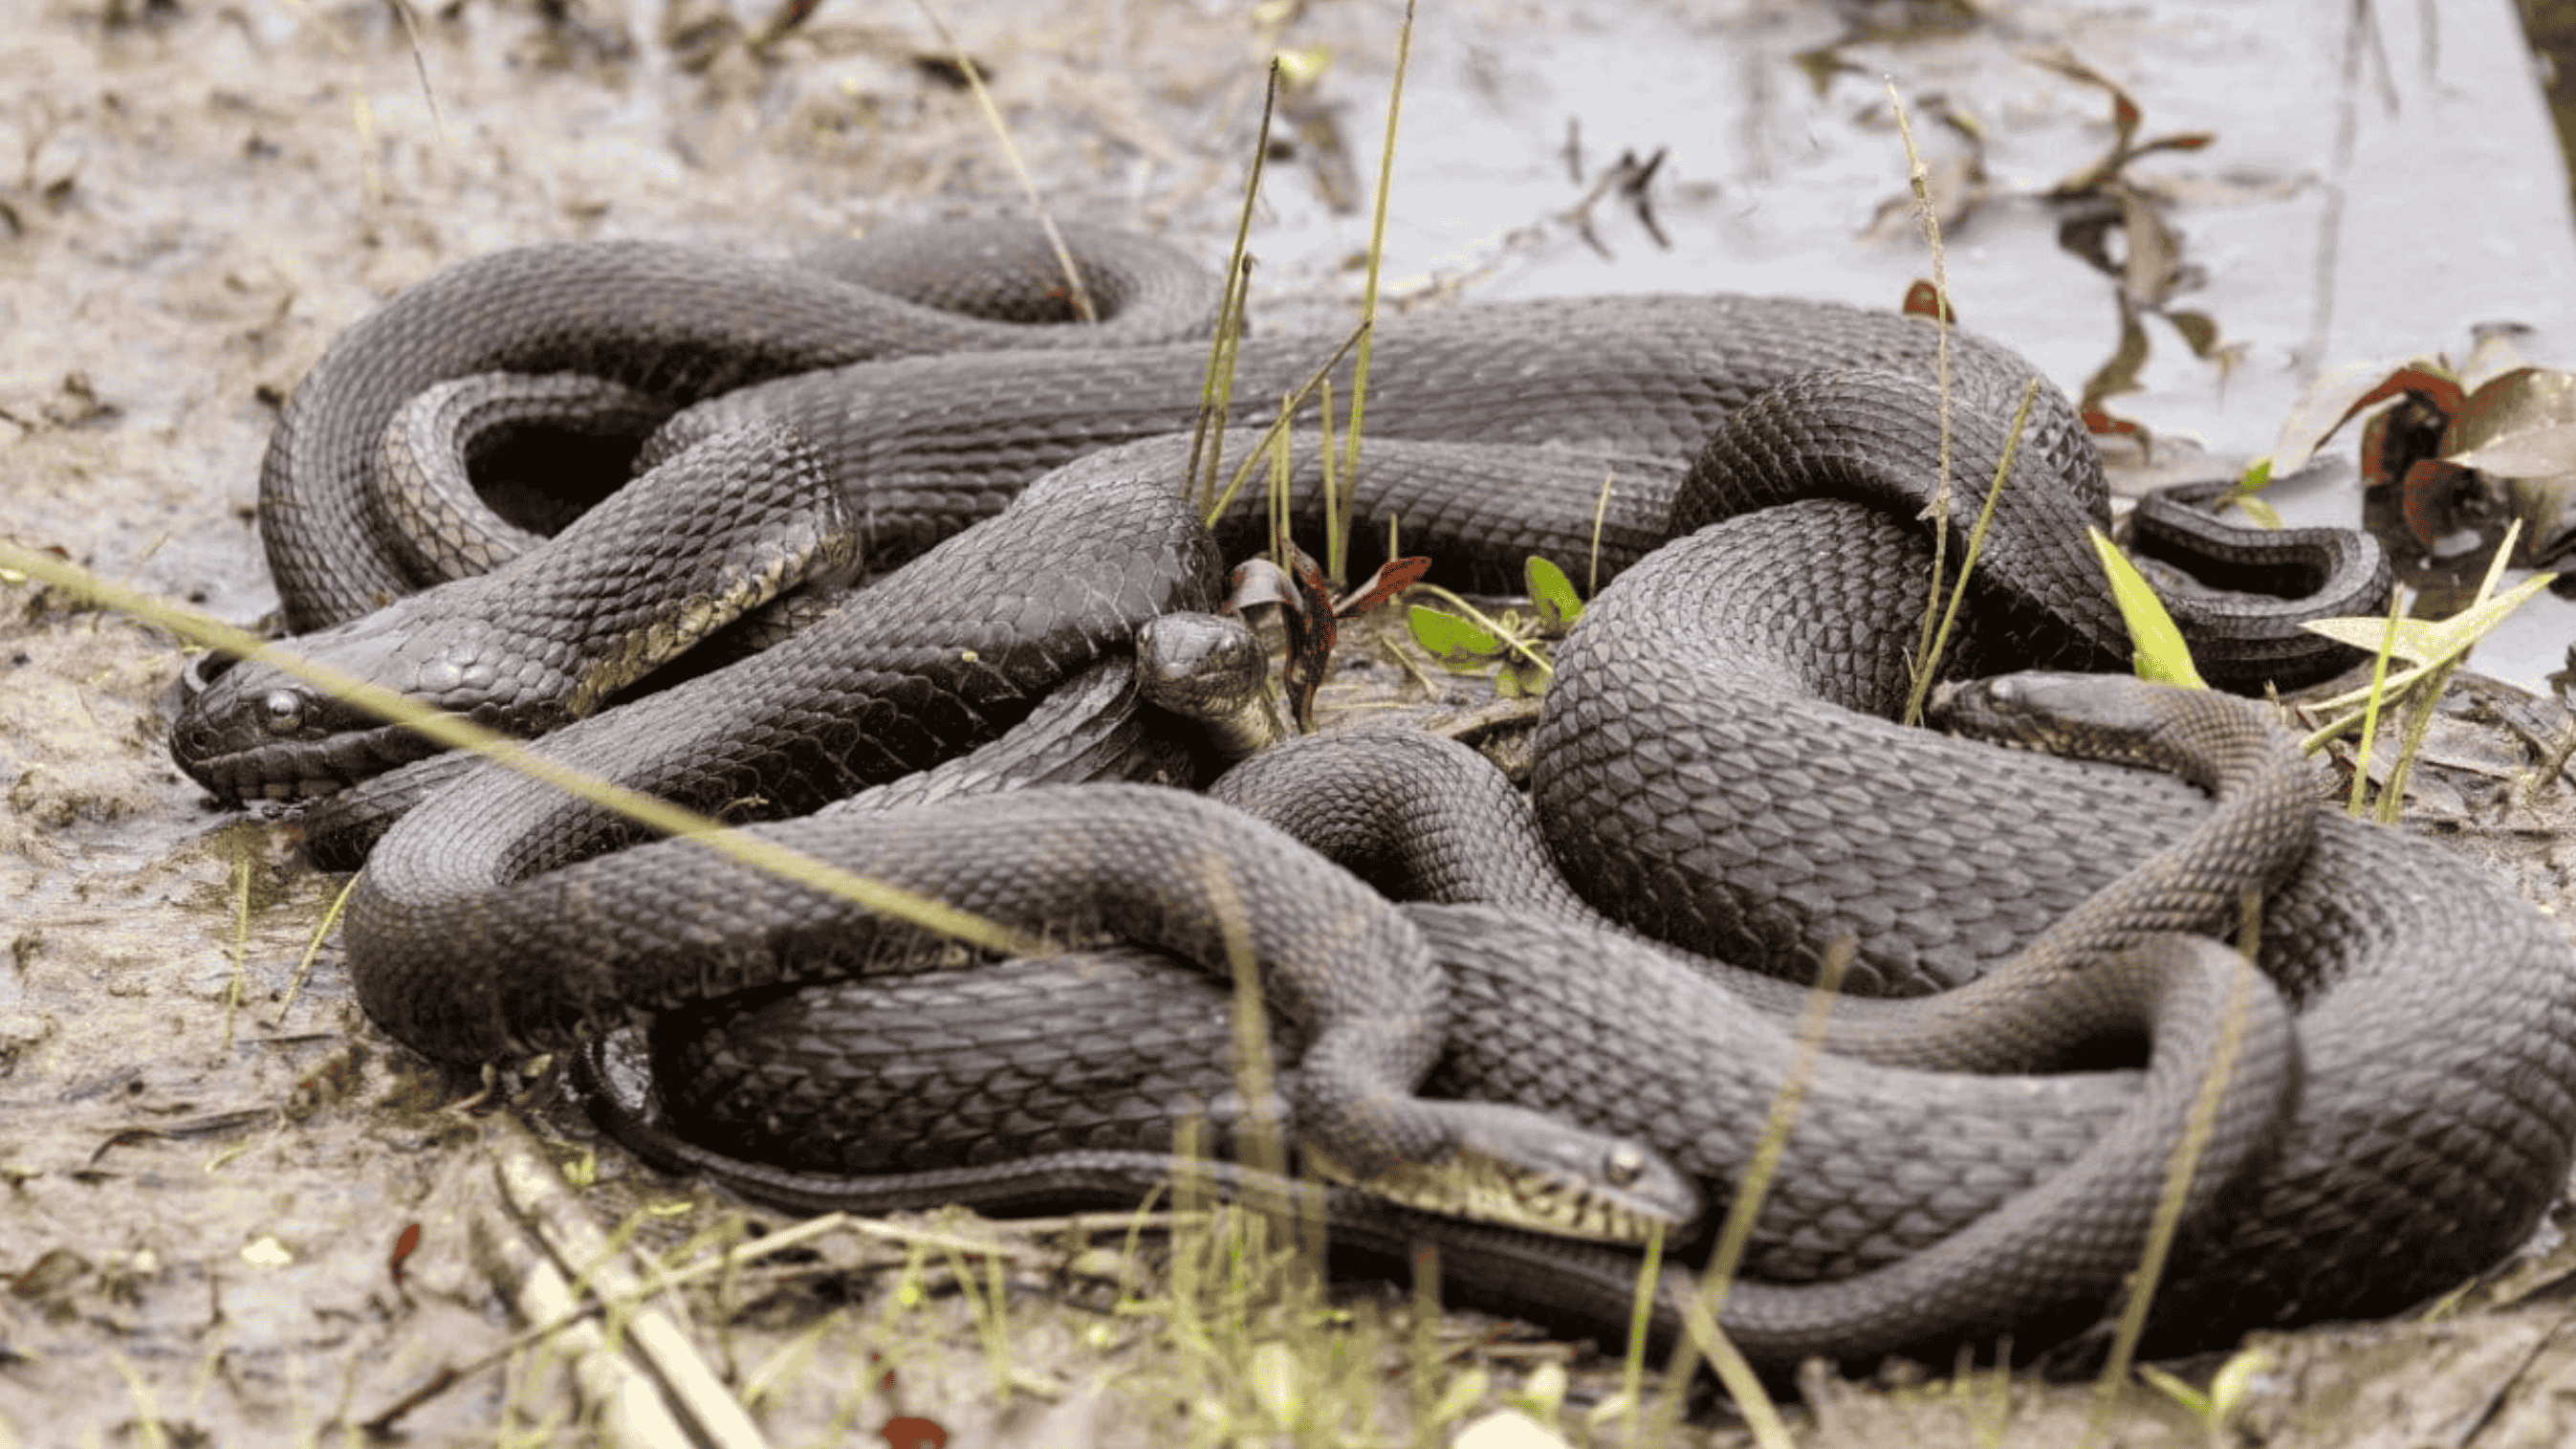 Snakes Mating Season